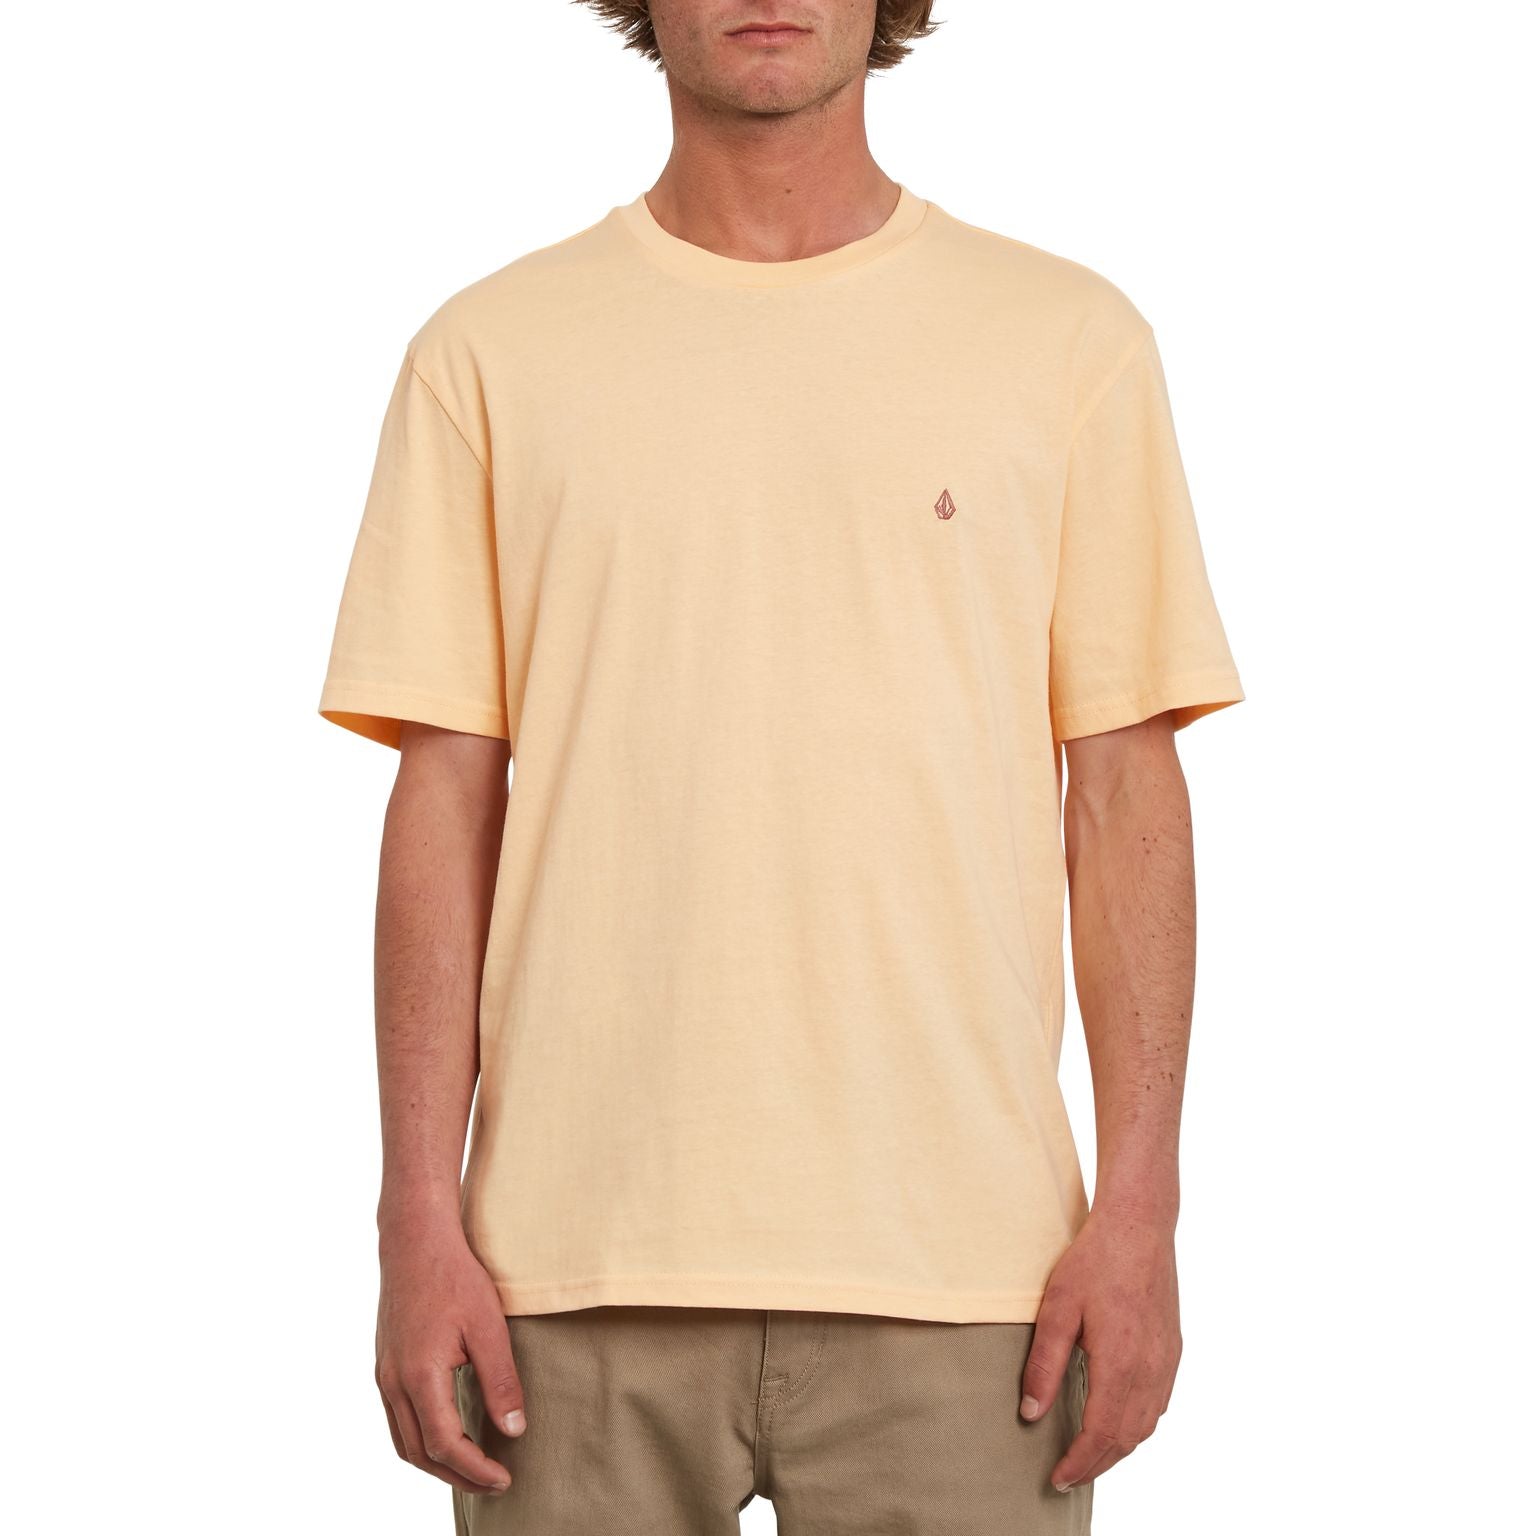 Schlichtes Volcom T-Shirt in färbe Cream Blush mit kleiner Volcom Stickerei über dem Herzen aus 100% Bio Baumwolle.